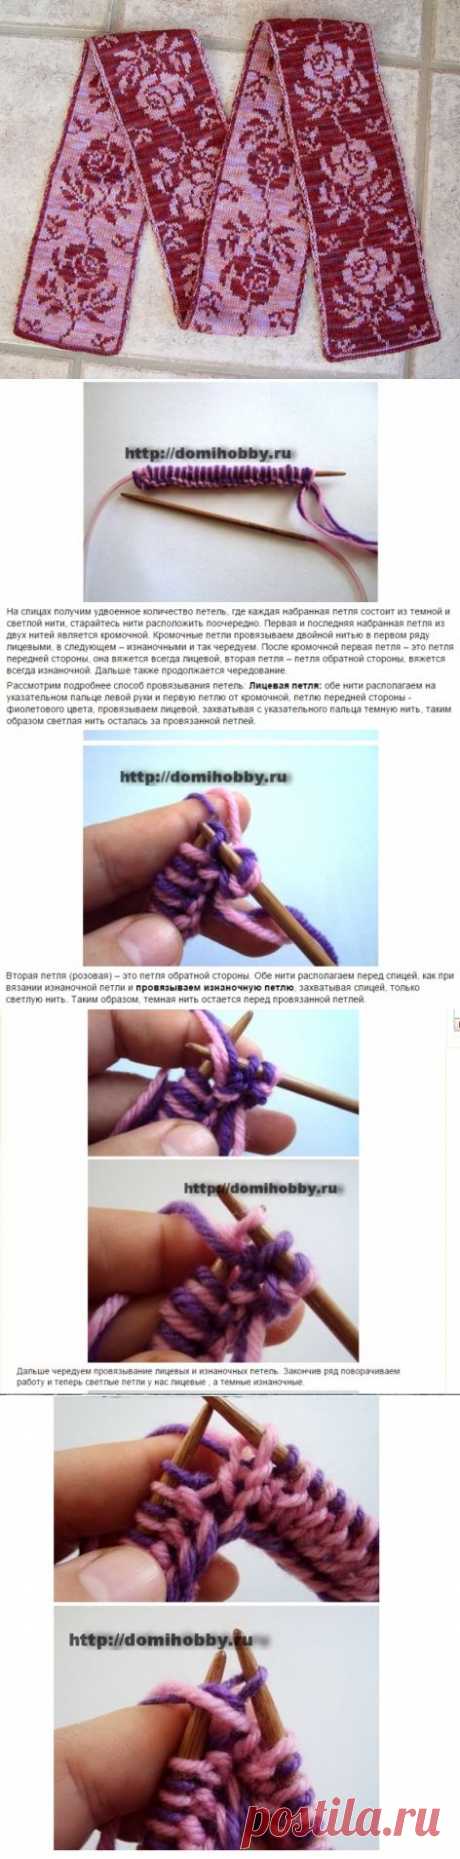 Двухстороннее вязание. 2 / Вязание спицами / Вязание для женщин спицами. Схемы